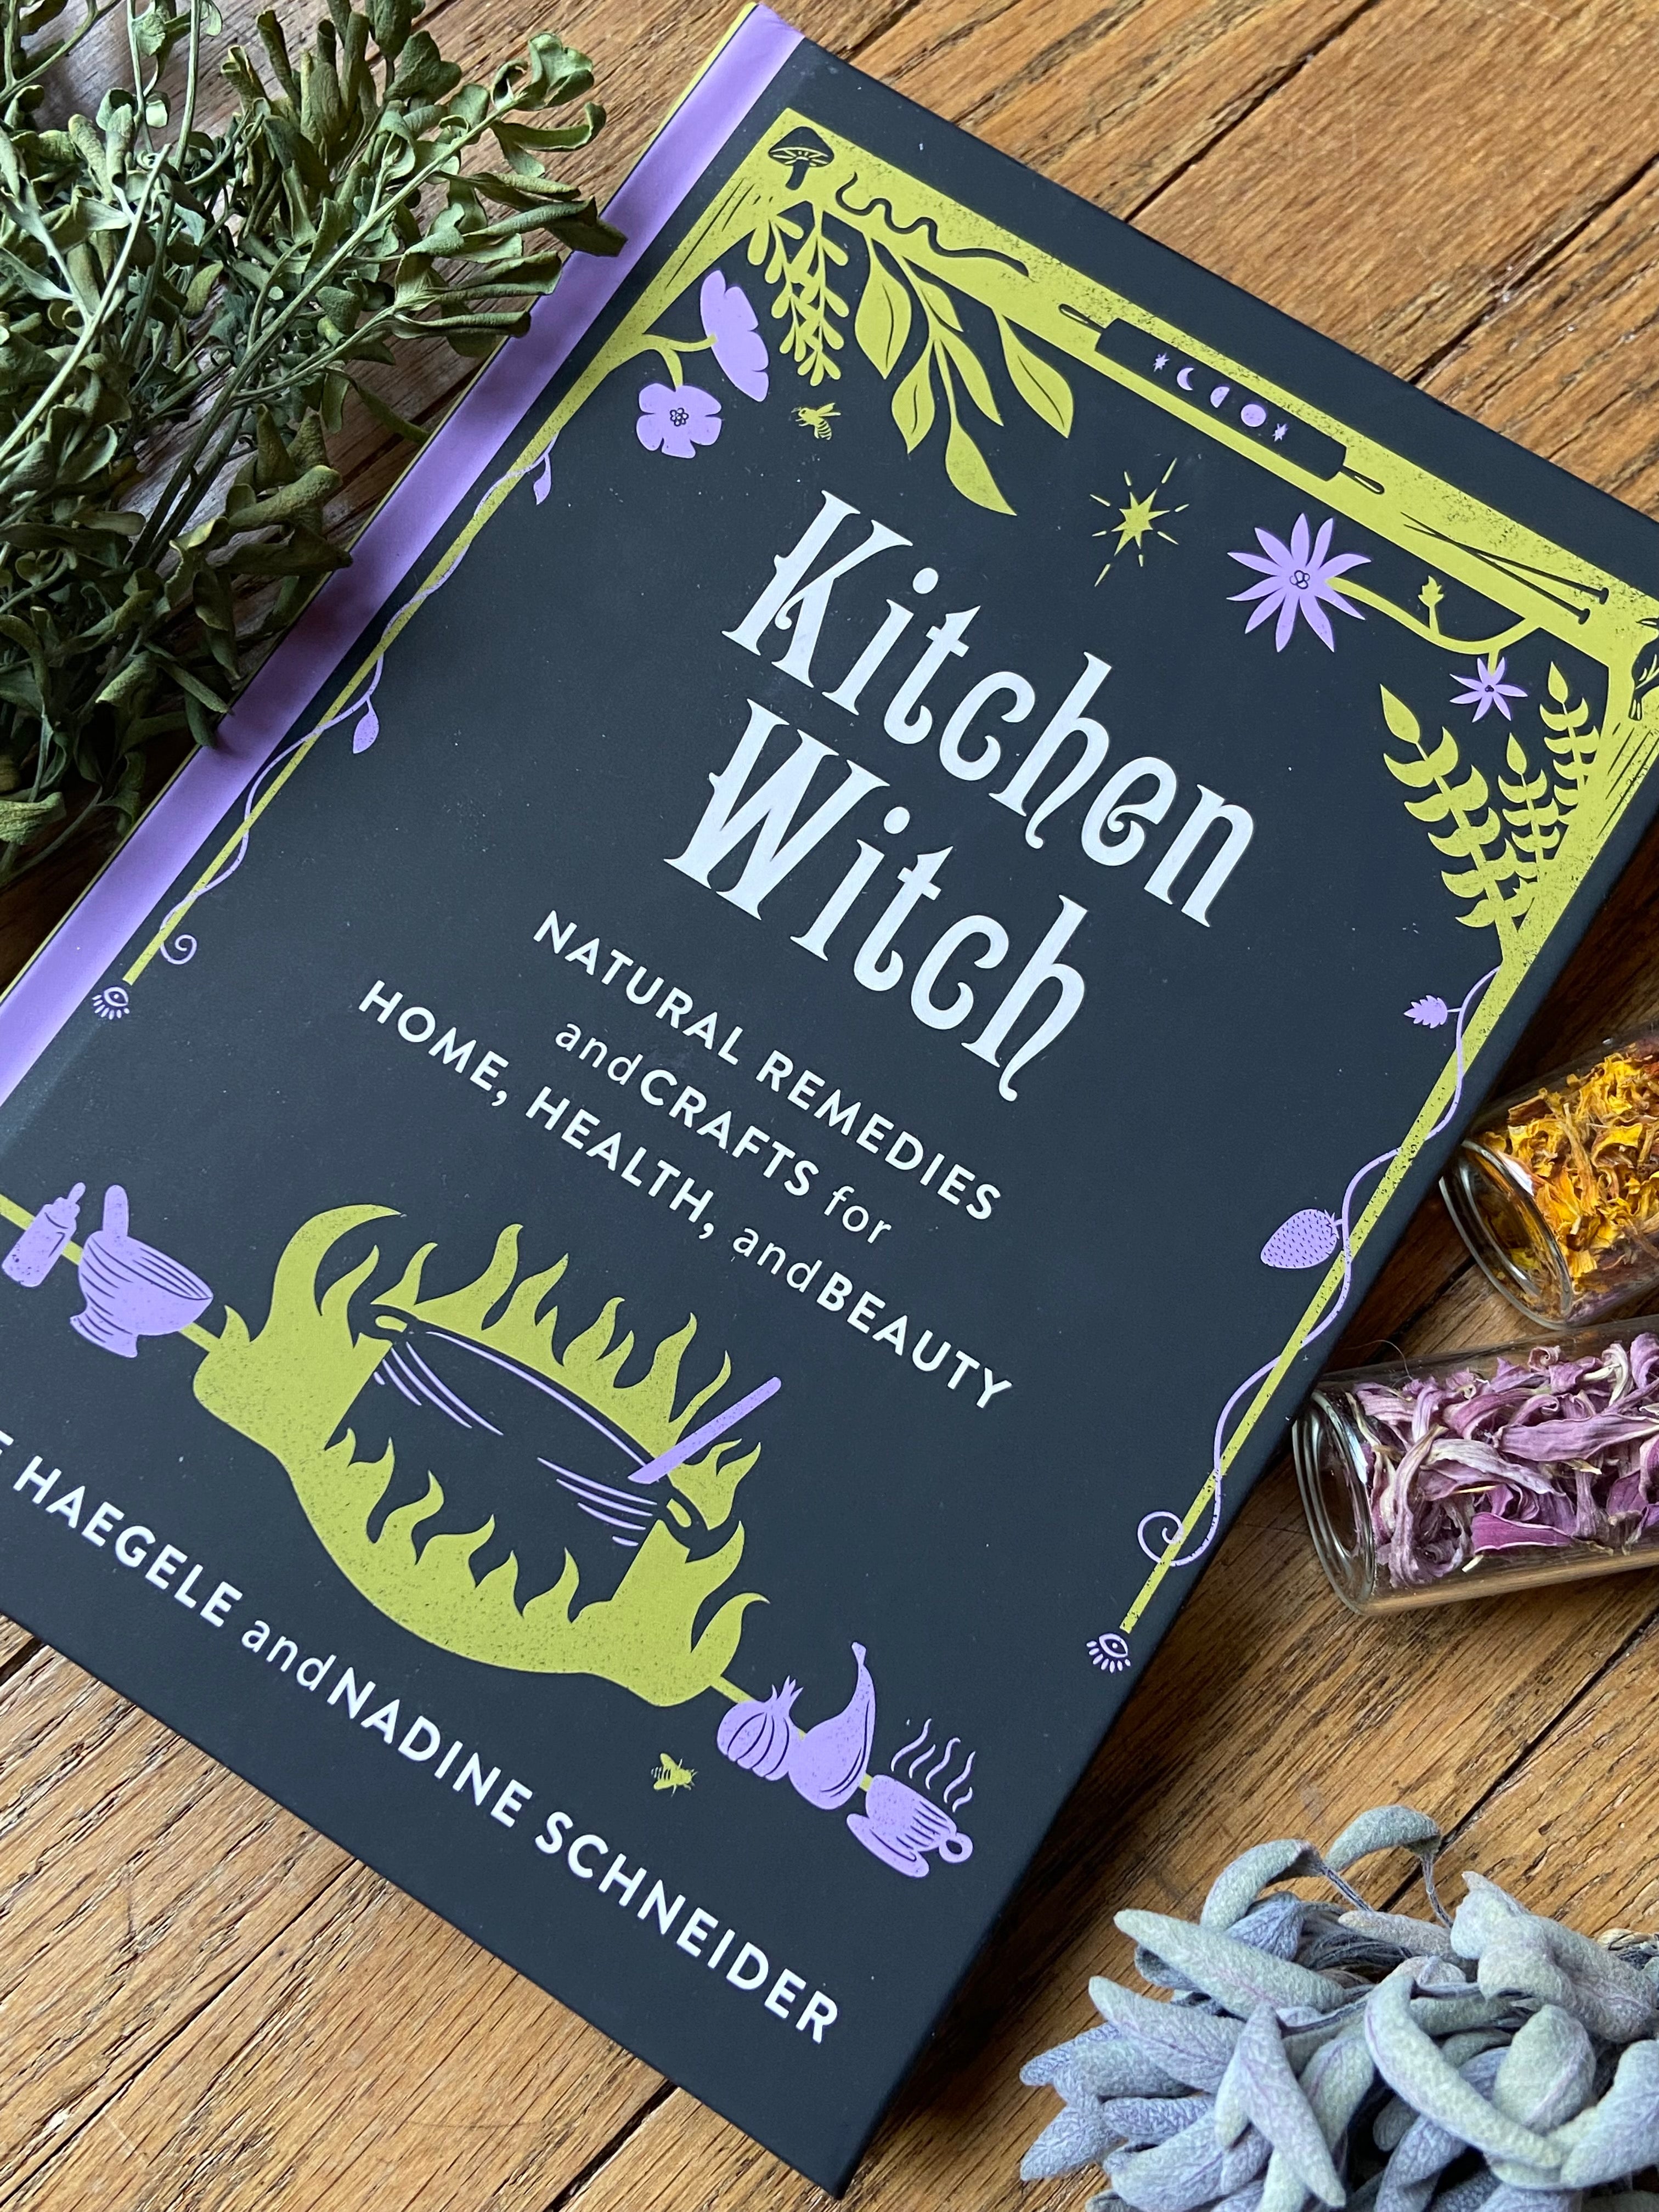 Kitchen Witch: Natural Remedies and Crafts by Katie Haegele & Nadine Schneider